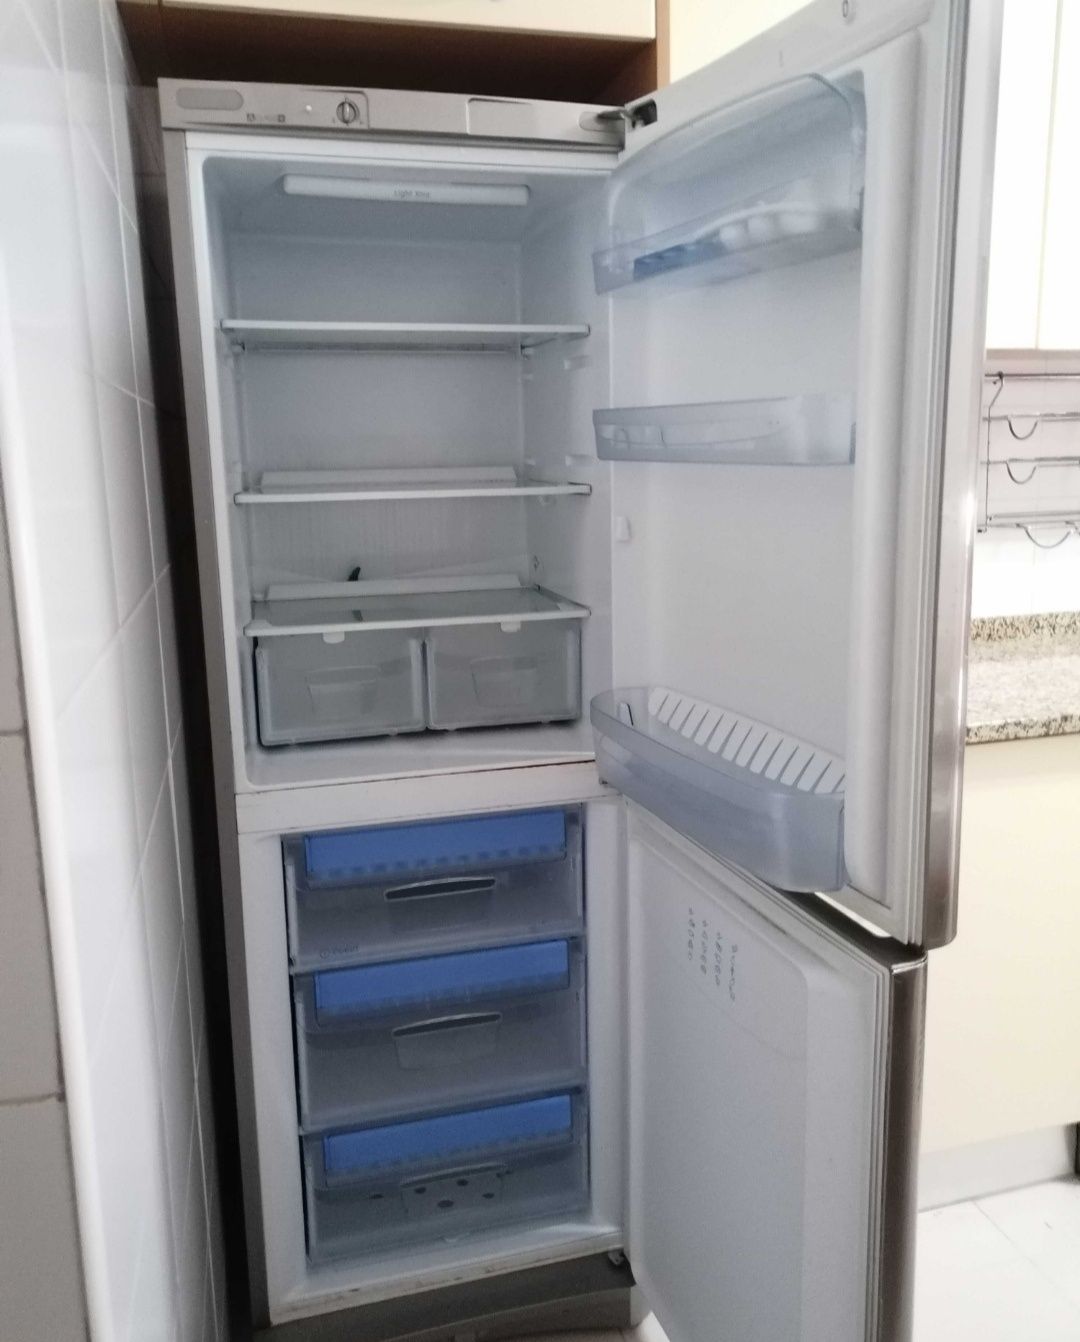 Combinado/frigorífico- Indesit BAN 12 IX
Combinado/frigorífico- InComb